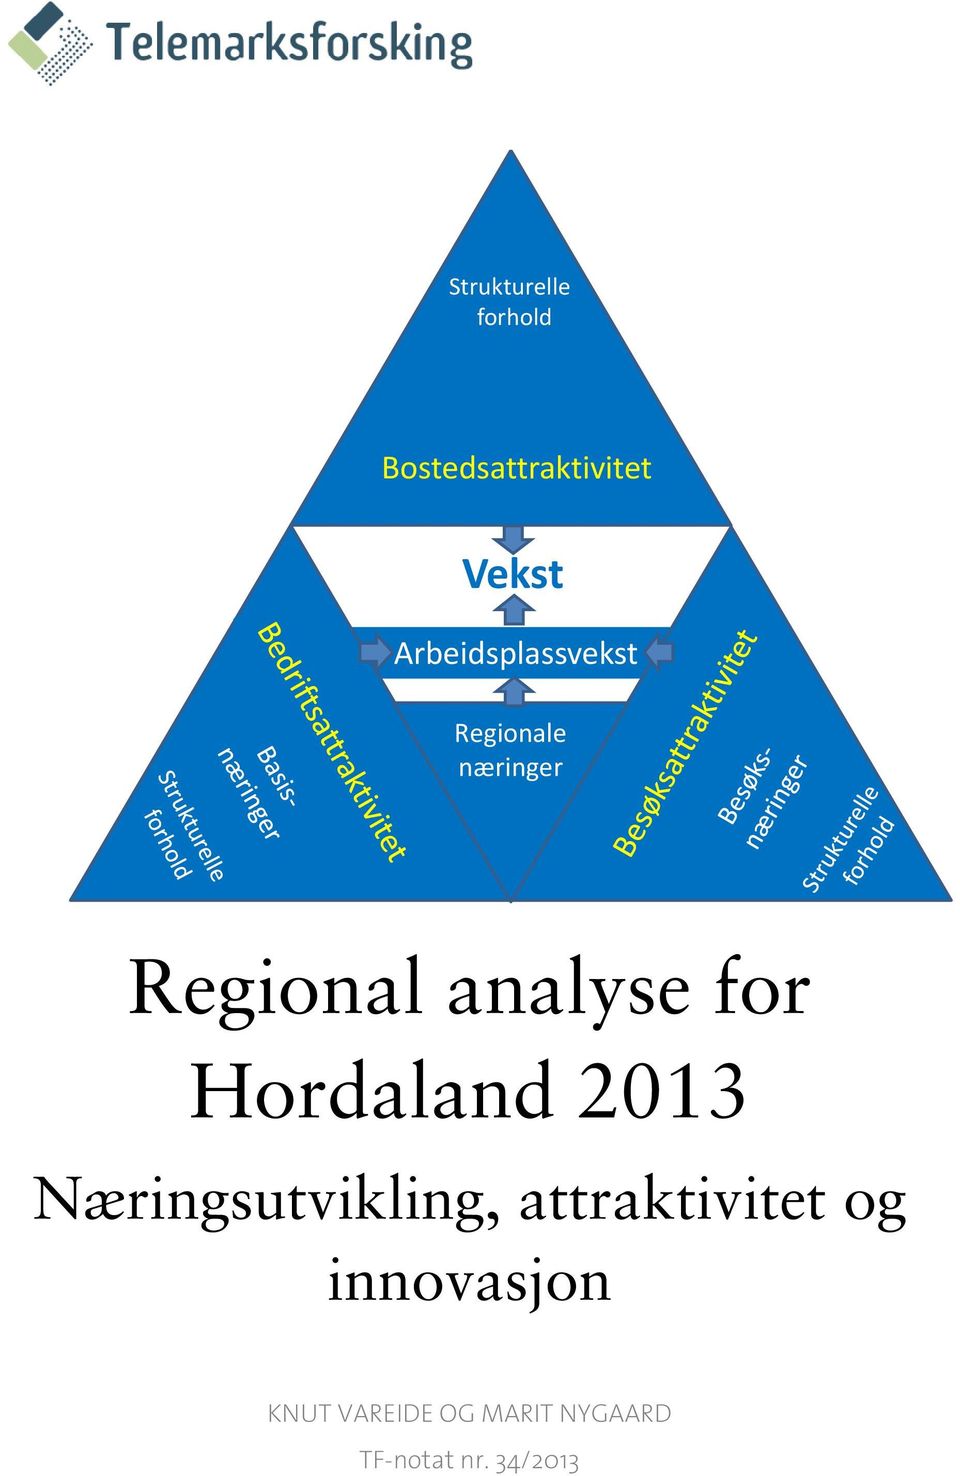 for Hordaland 2013 Næringsutvikling, attraktivitet og